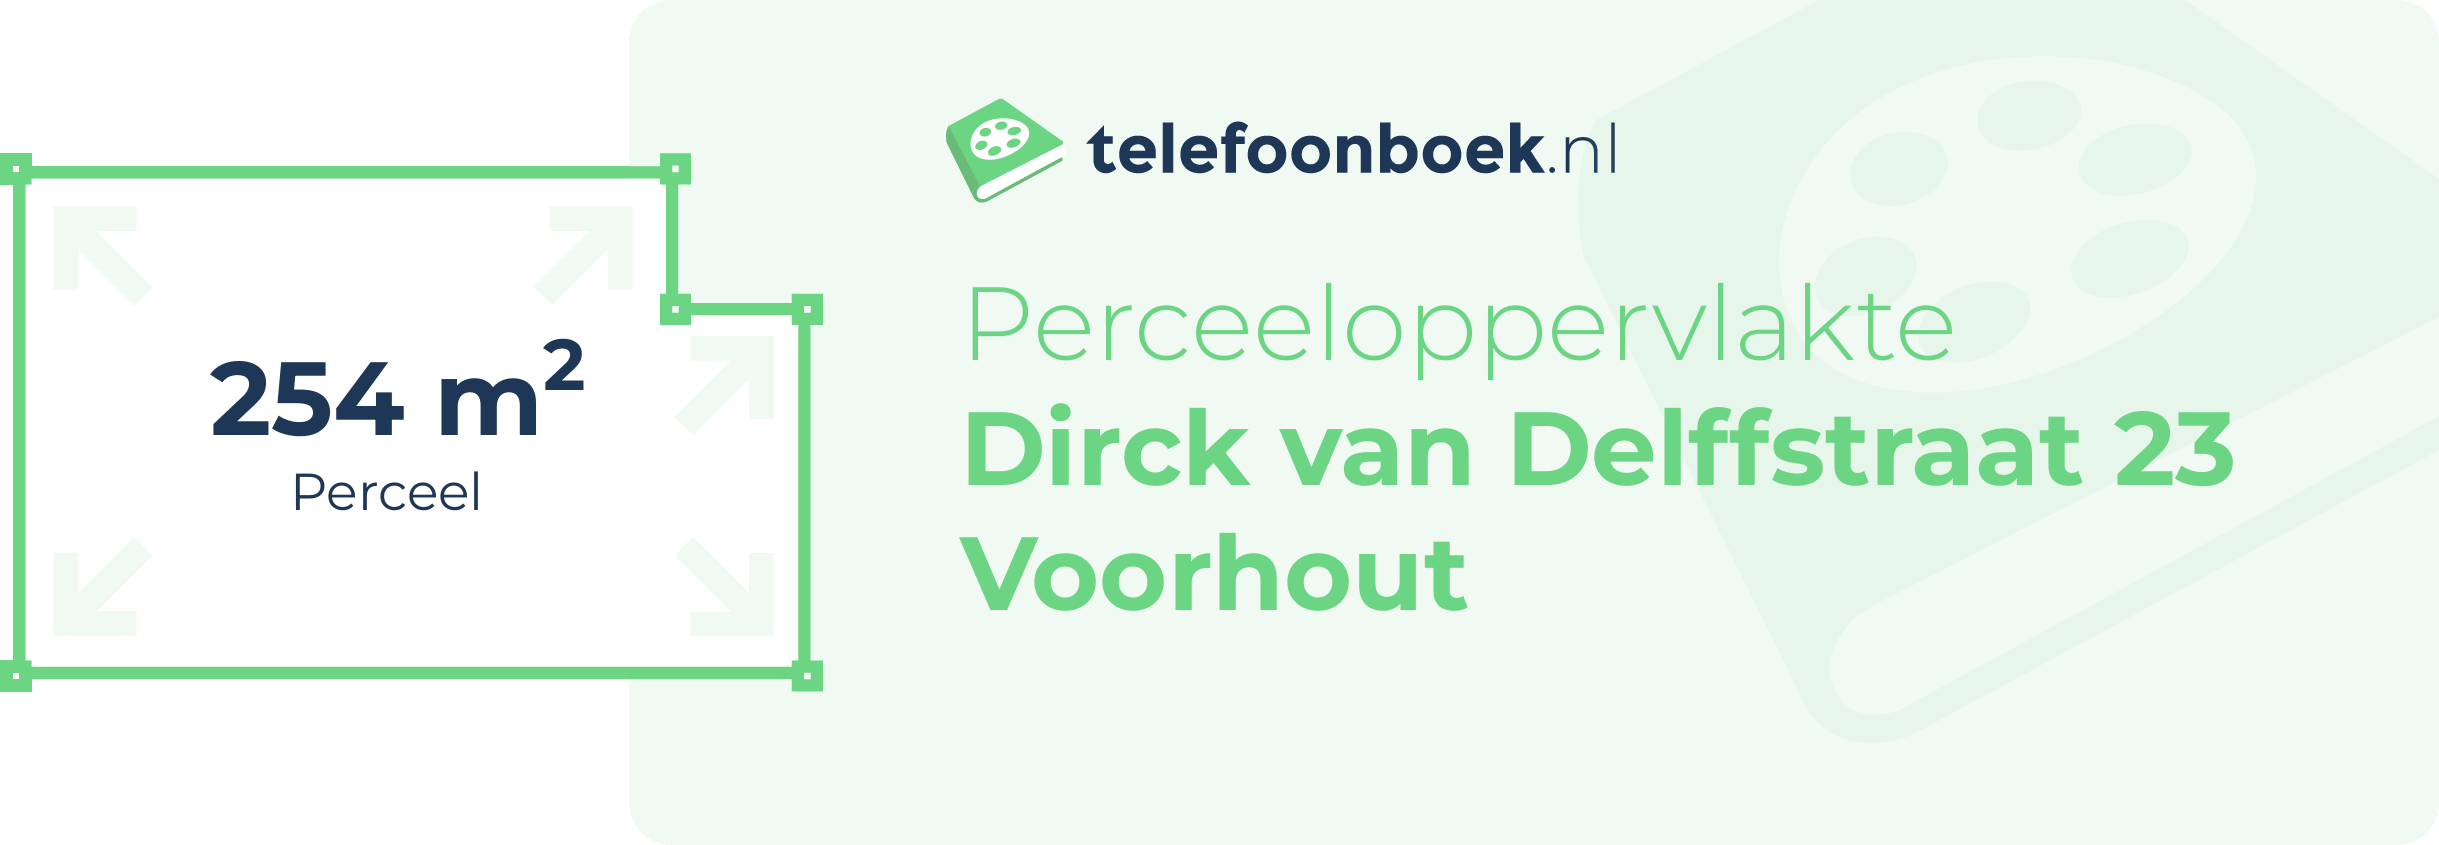 Perceeloppervlakte Dirck Van Delffstraat 23 Voorhout